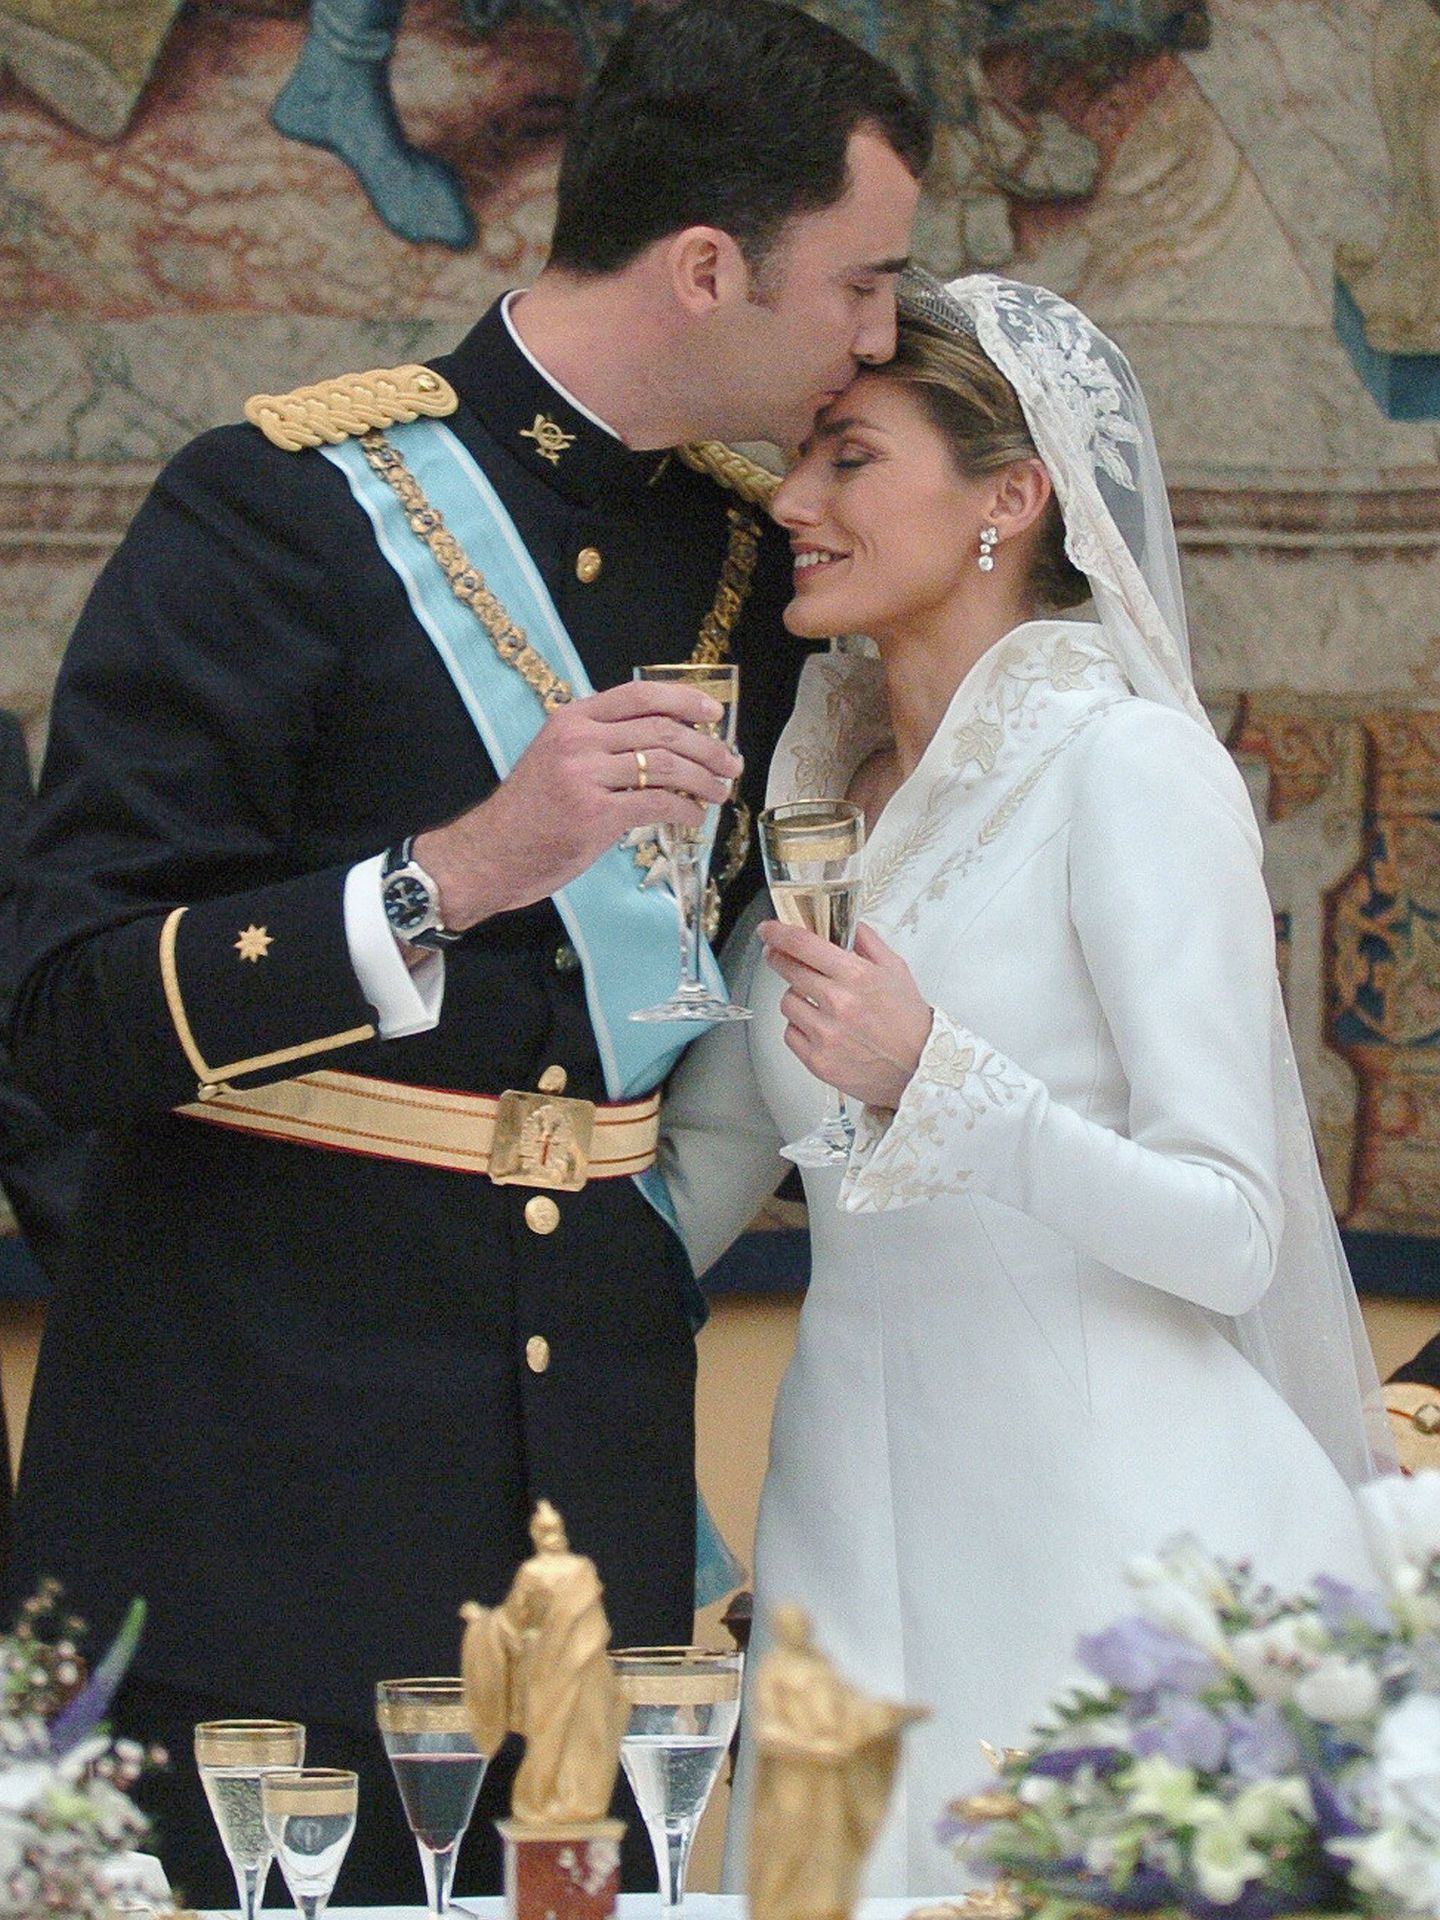 Los reyes Felipe y Letizia en el banquete nupcial de su boda, en 2004. (Getty)